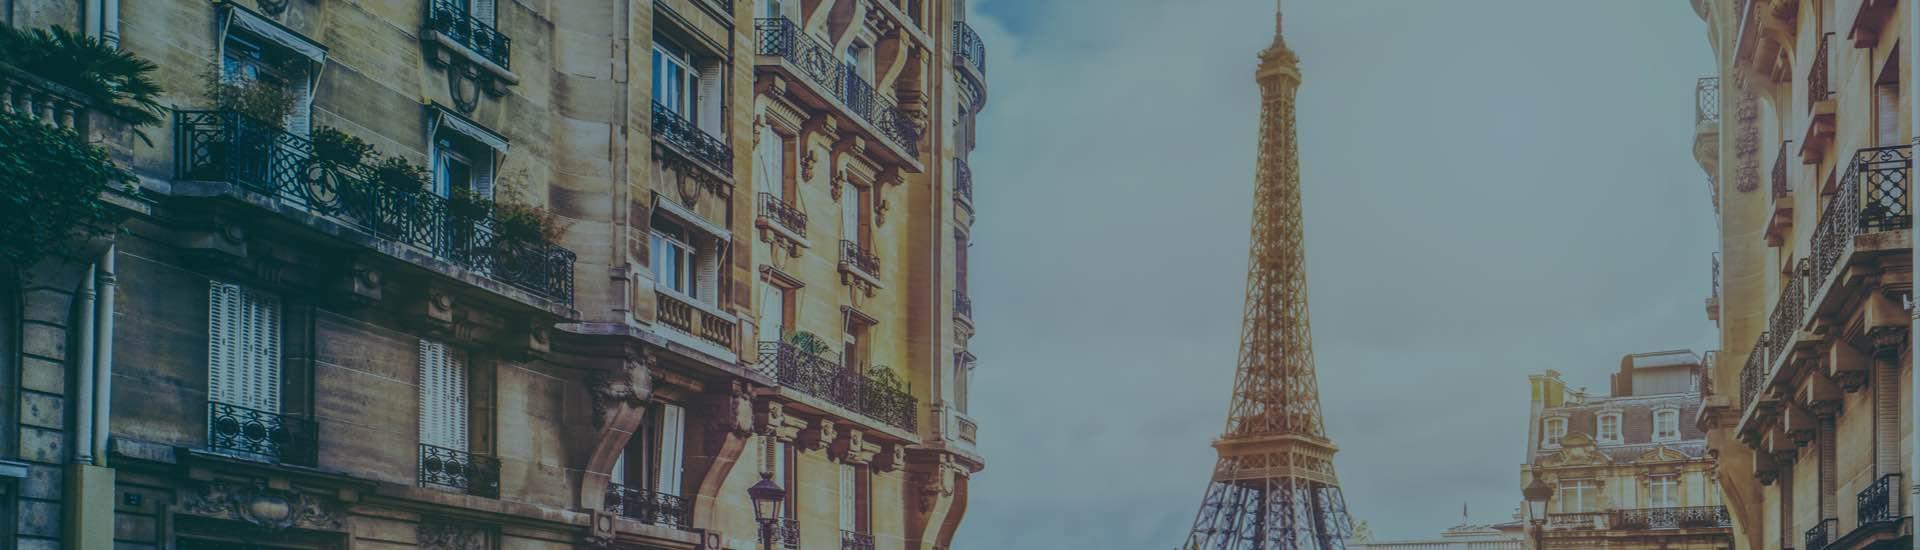 ابحث عن أفضل الفنادق في باريس